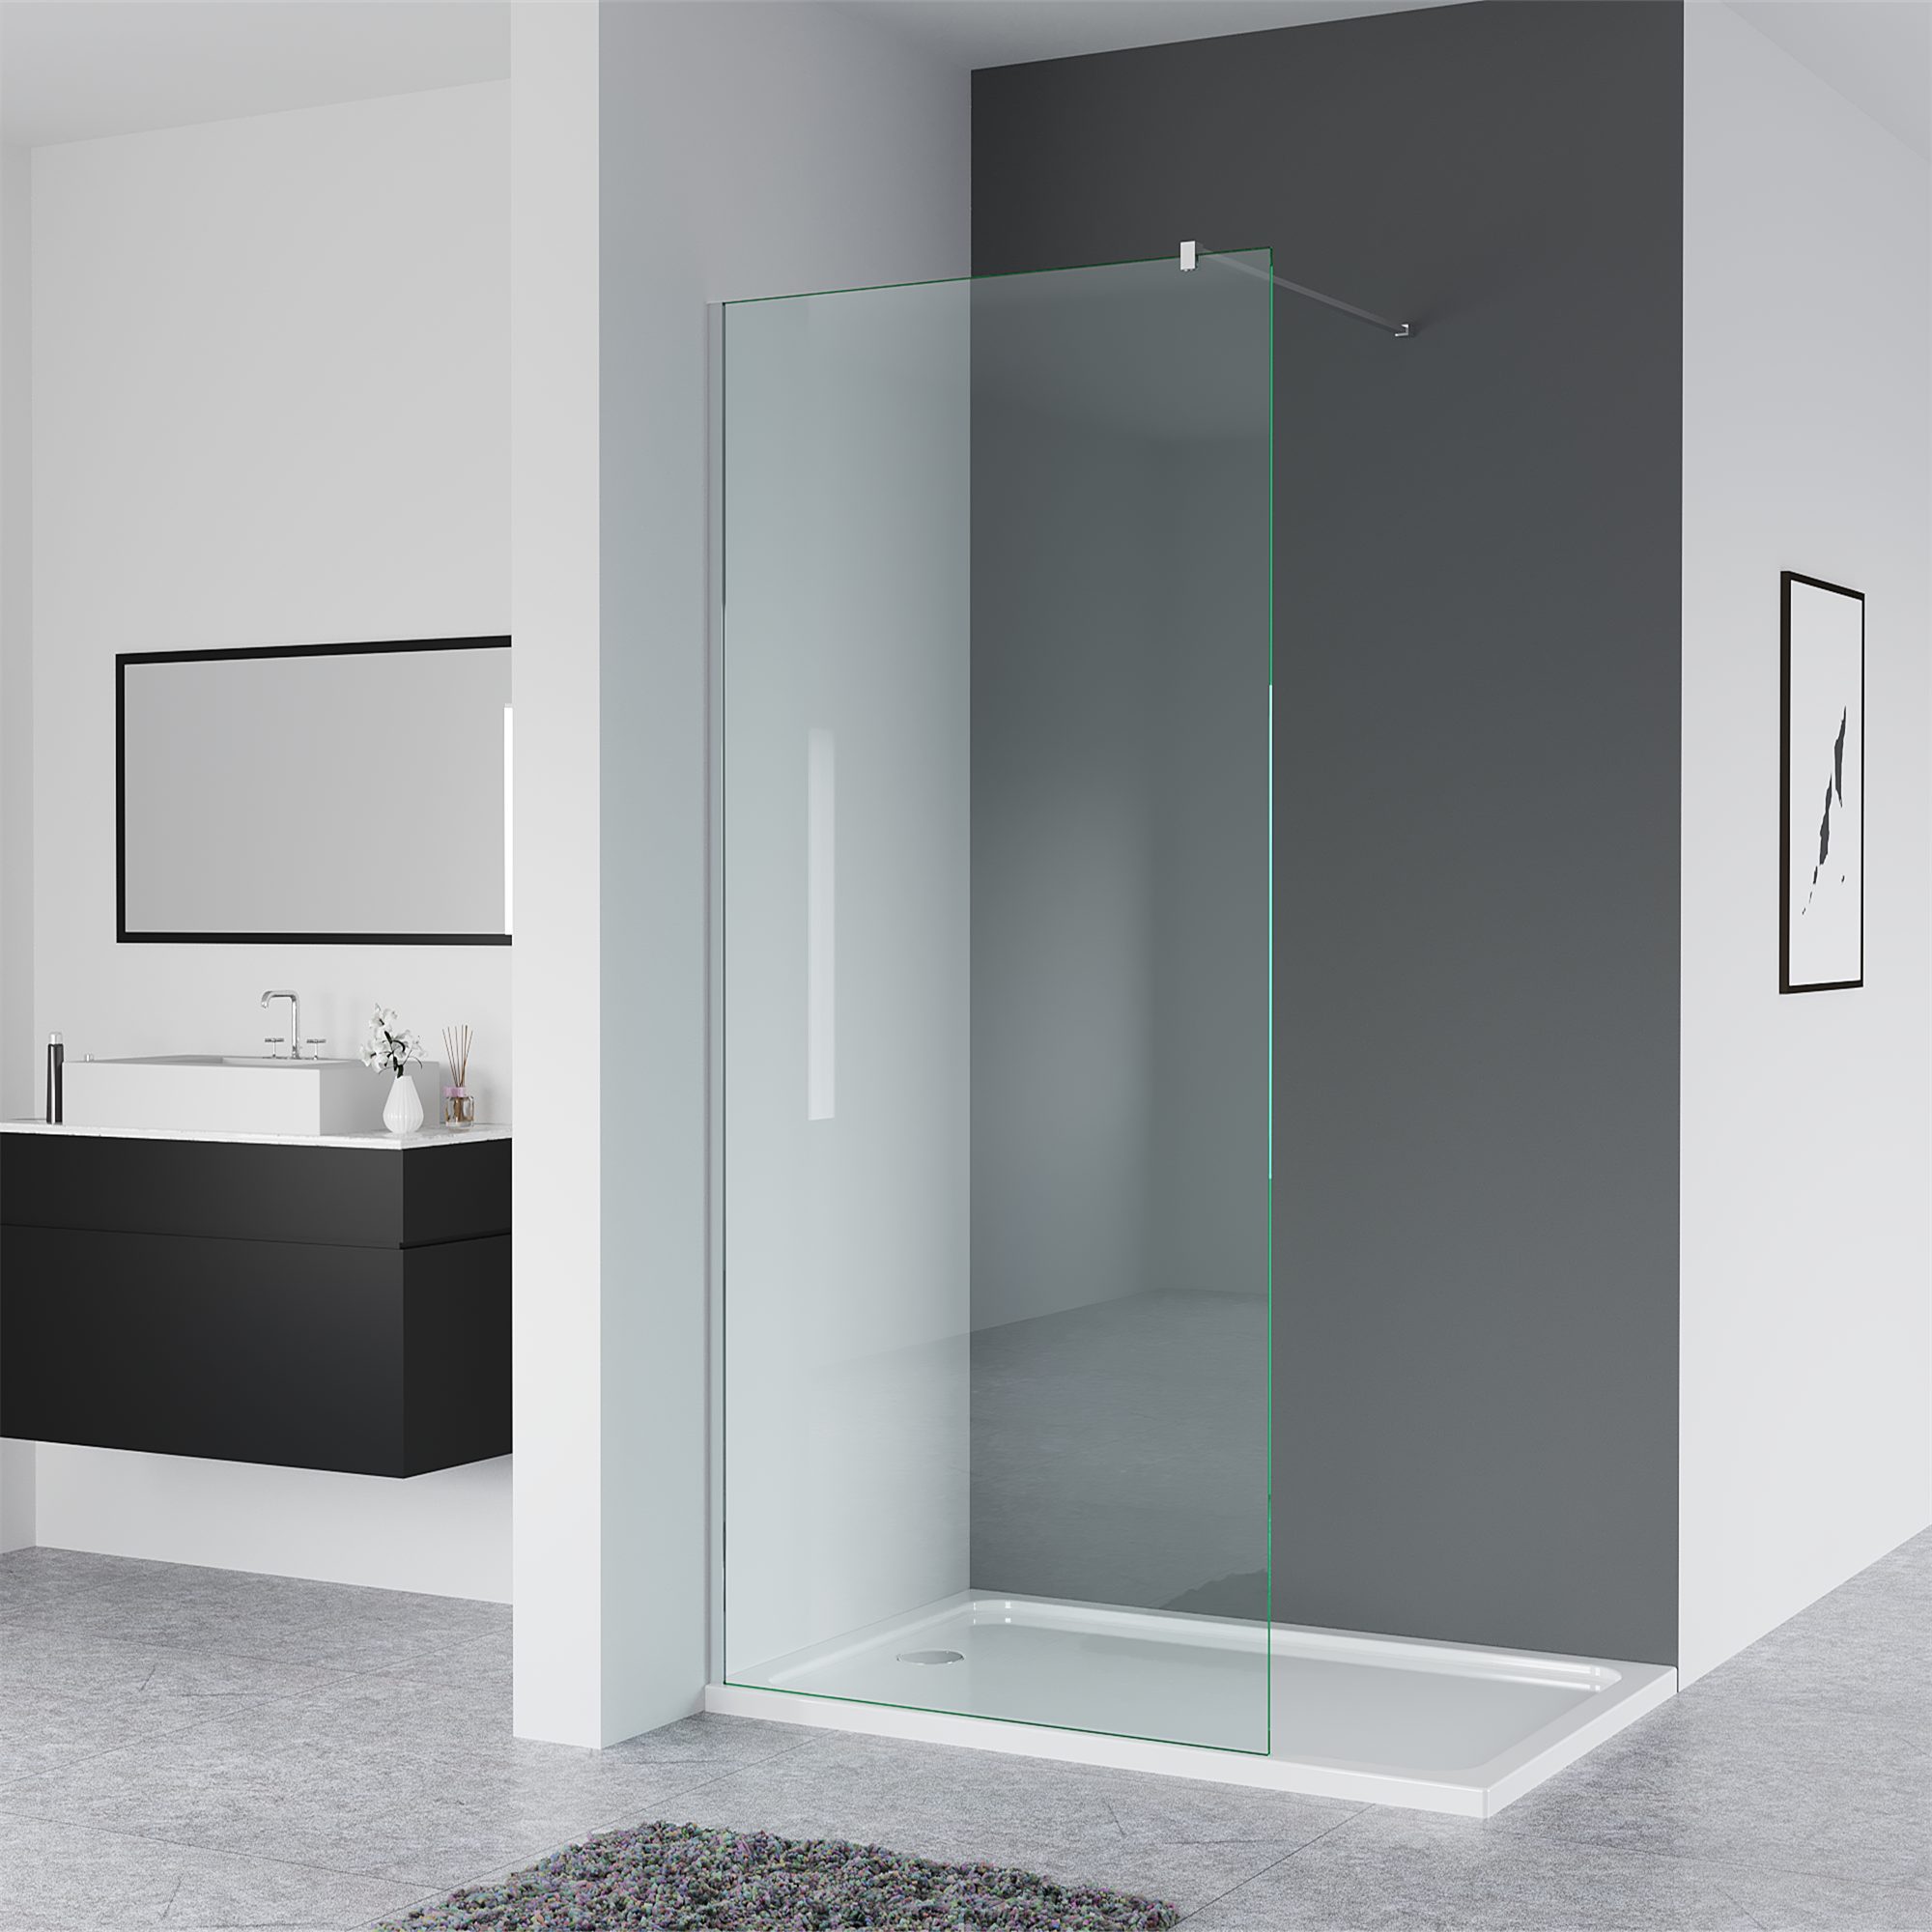 IMPTS Duschwand Glaswand Dusche, Glas, (80-120 x 200cm, Begehbare  Duschabtrennung,8mm ebenerdig Glastrennwand), mit Nano Clean Beschichtung